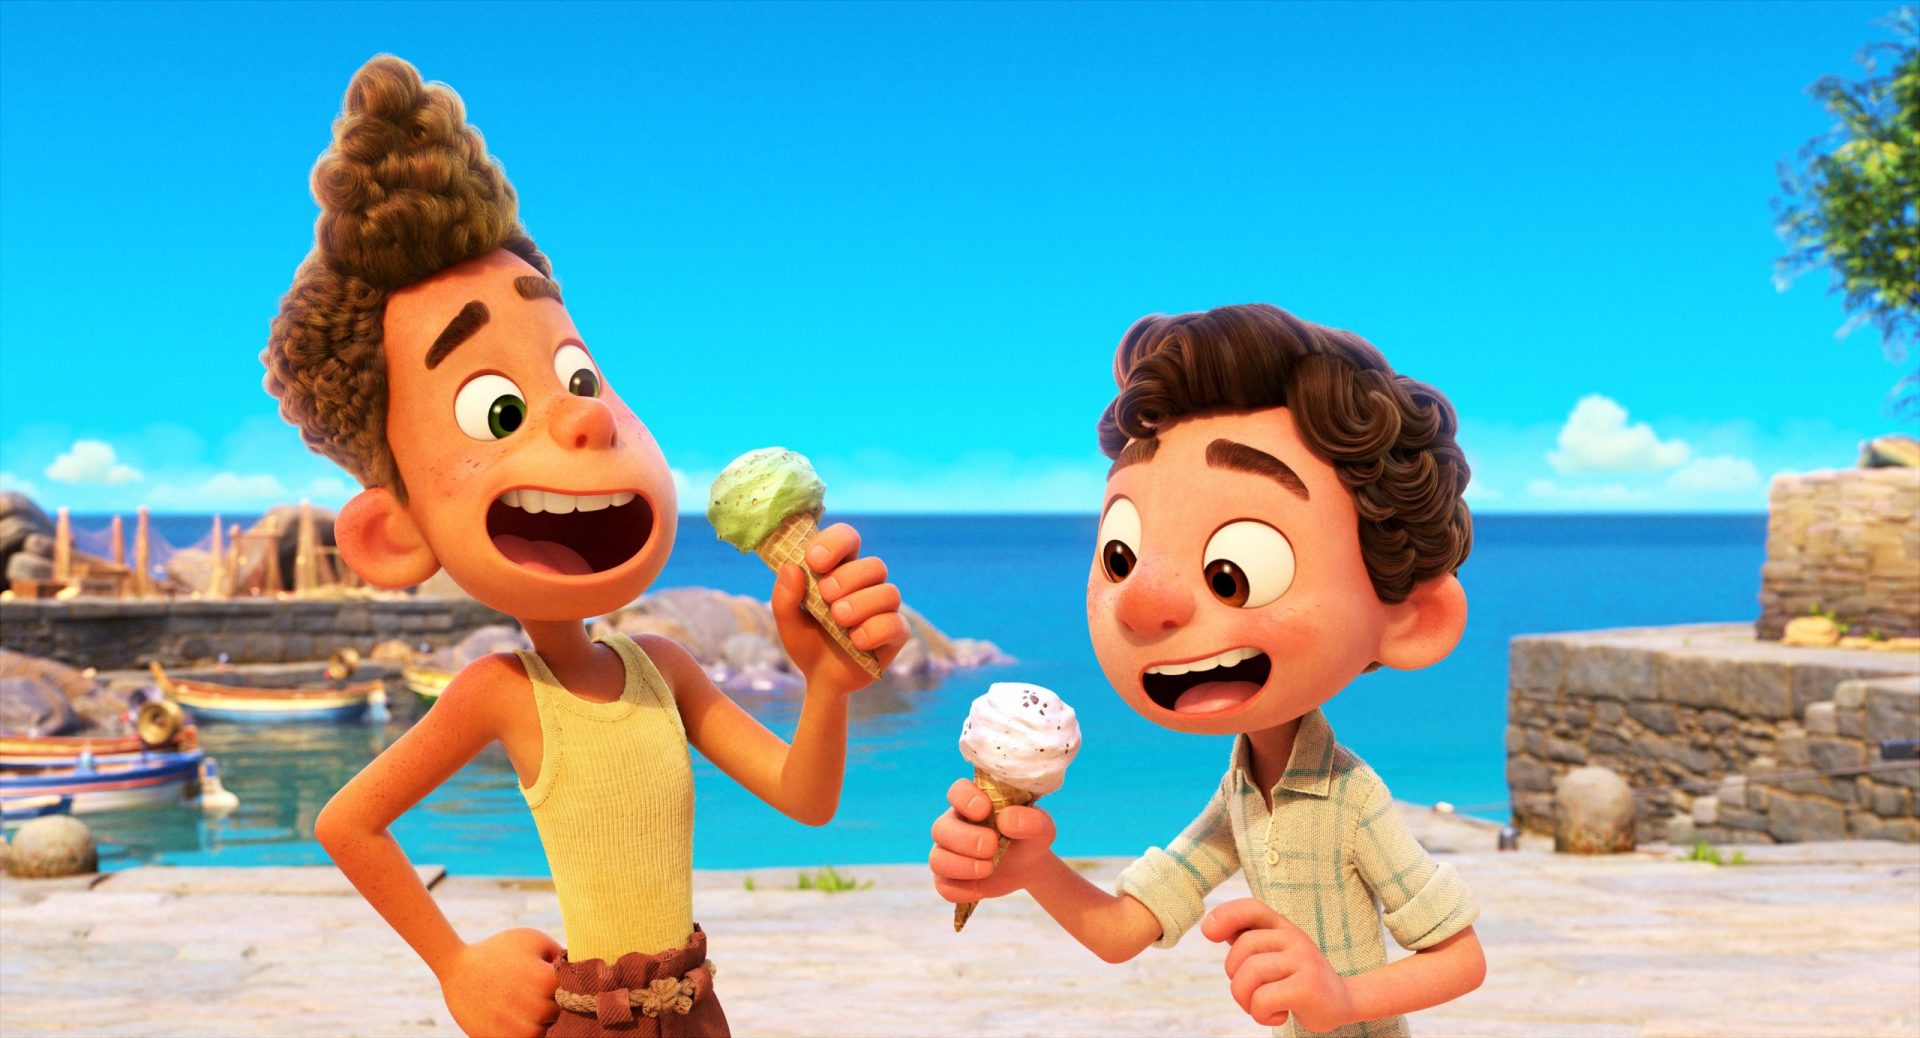 Luca, il trailer del nuovo film Disney Pixar